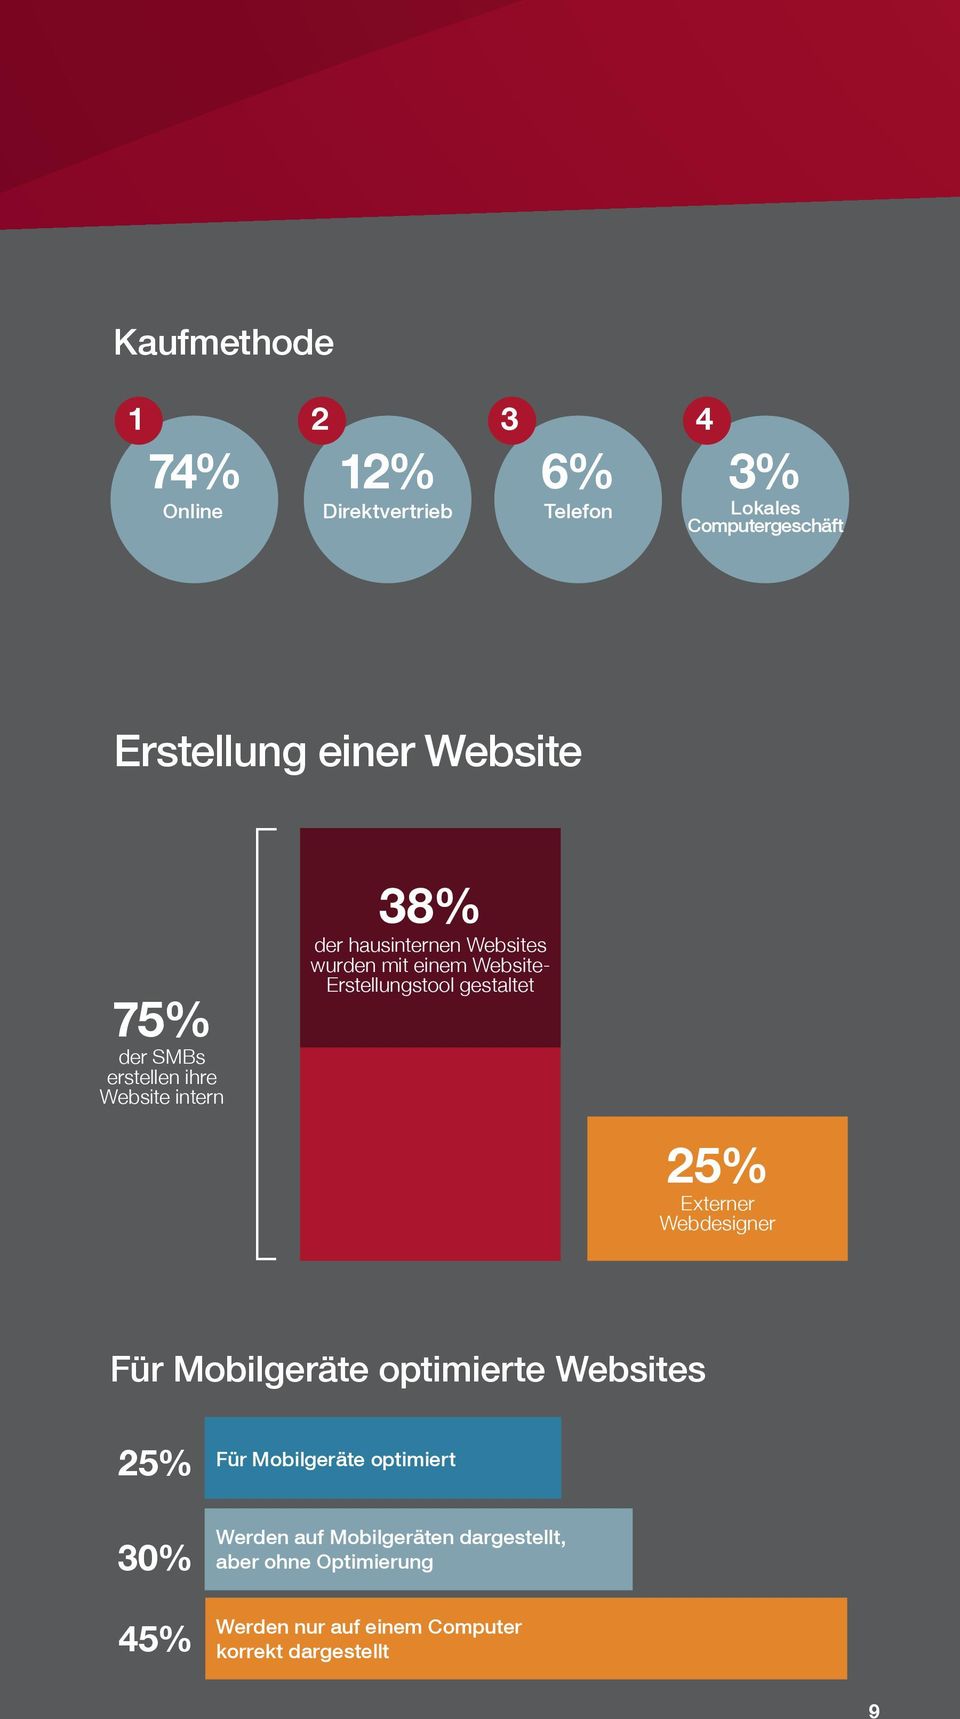 Erstellungstool gestaltet 25% Externer Webdesigner Für Mobilgeräte optimierte Websites 25% Für Mobilgeräte